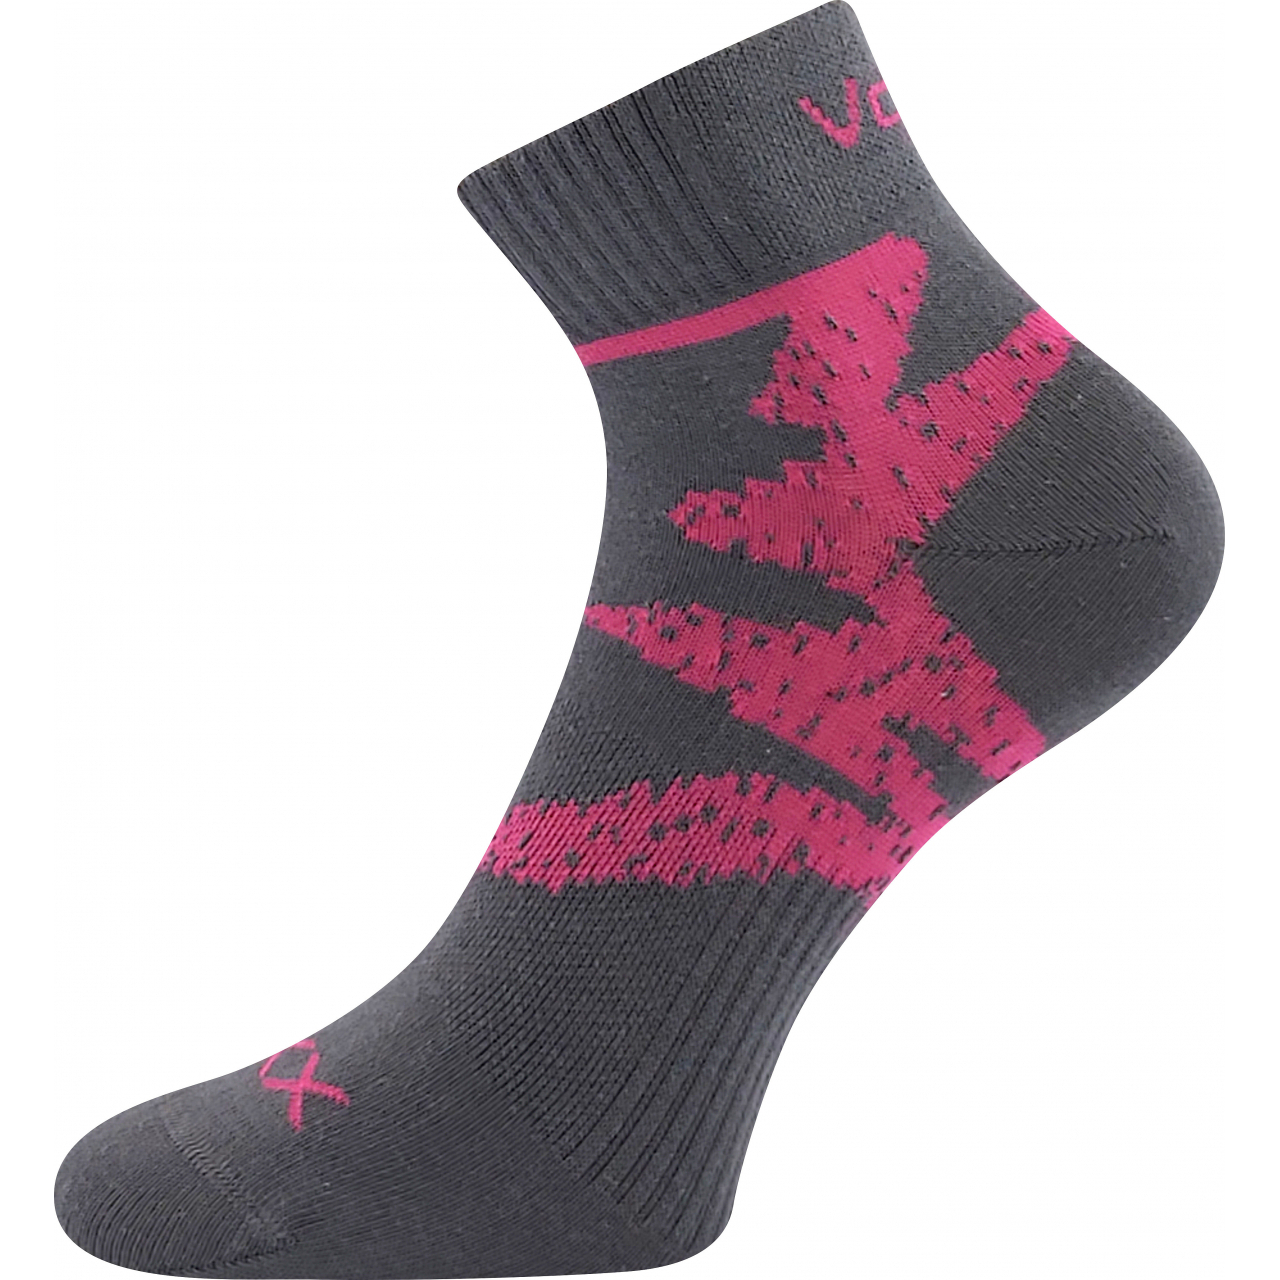 Ponožky sportovní unisex Voxx Franz 05 - šedé-růžové, 39-42